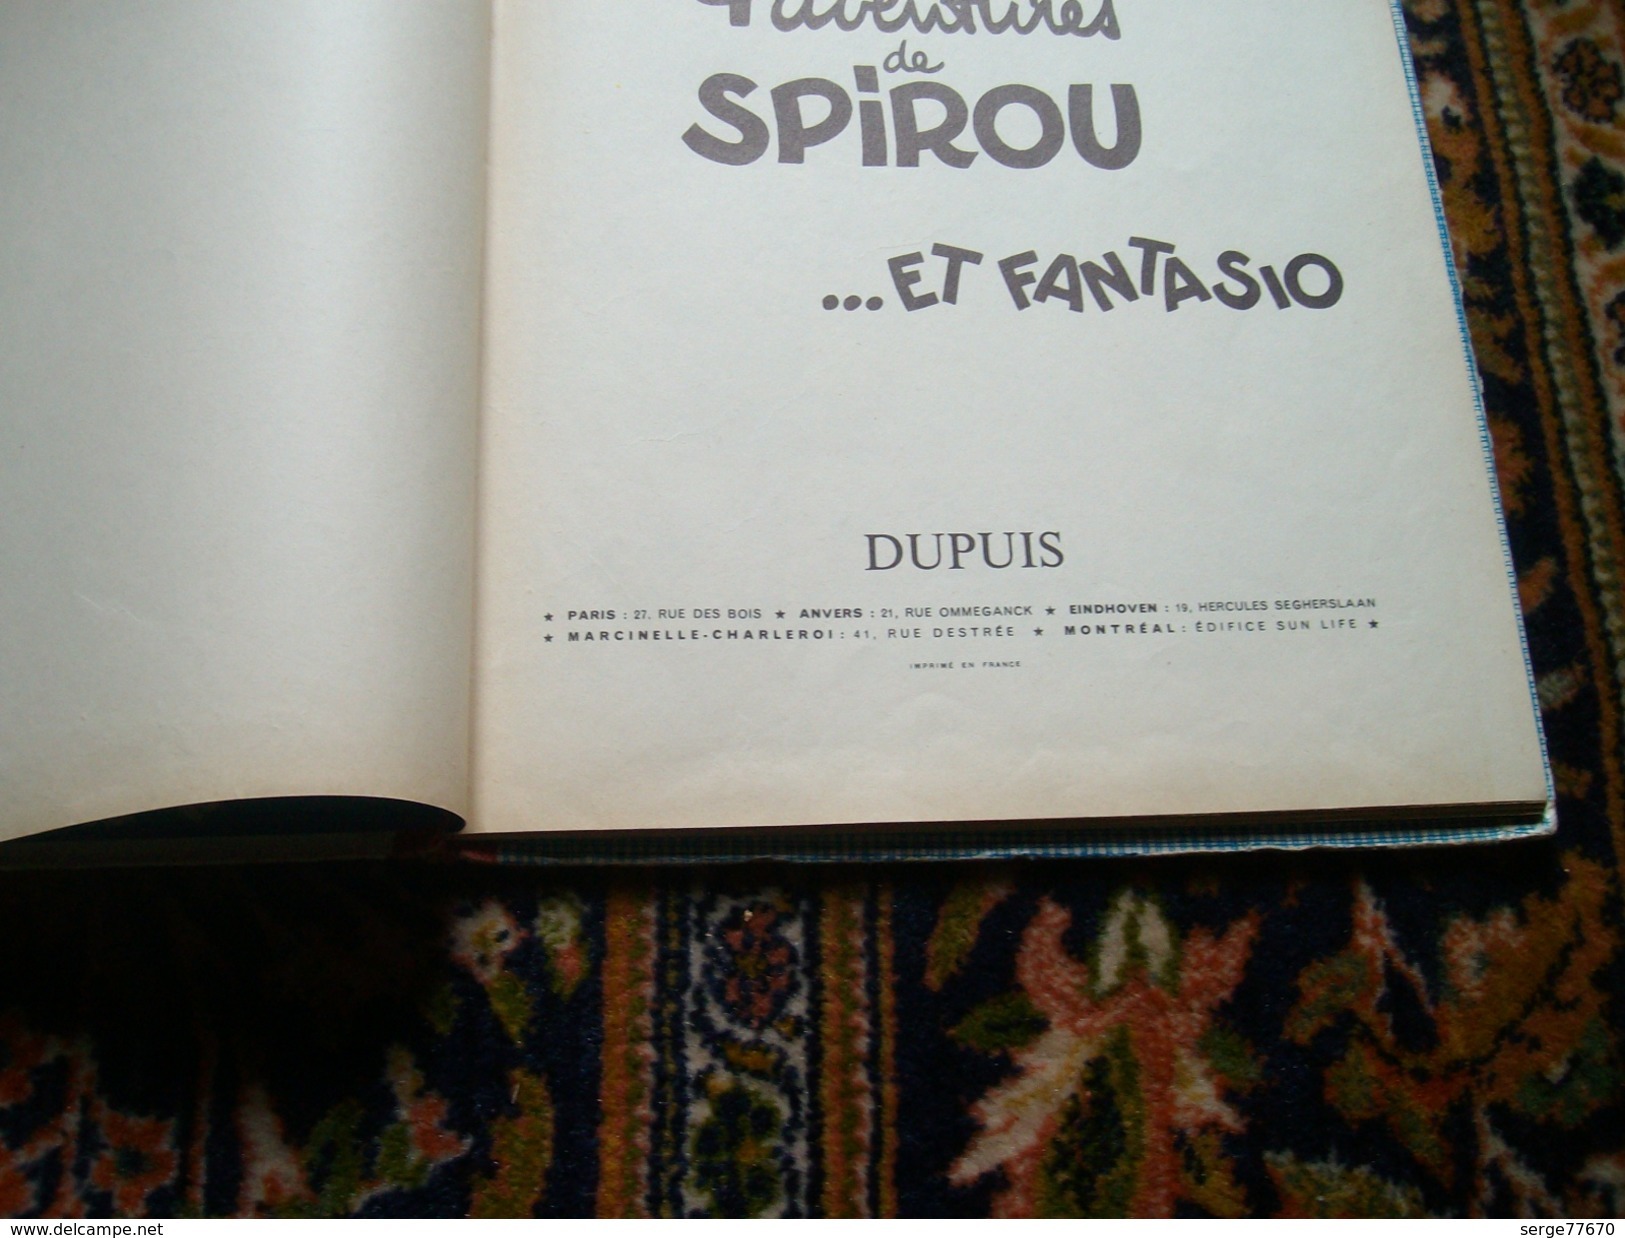 Spirou et Fantasio Franquin 4 aventures de 1956 édition originale française eo Dupuis